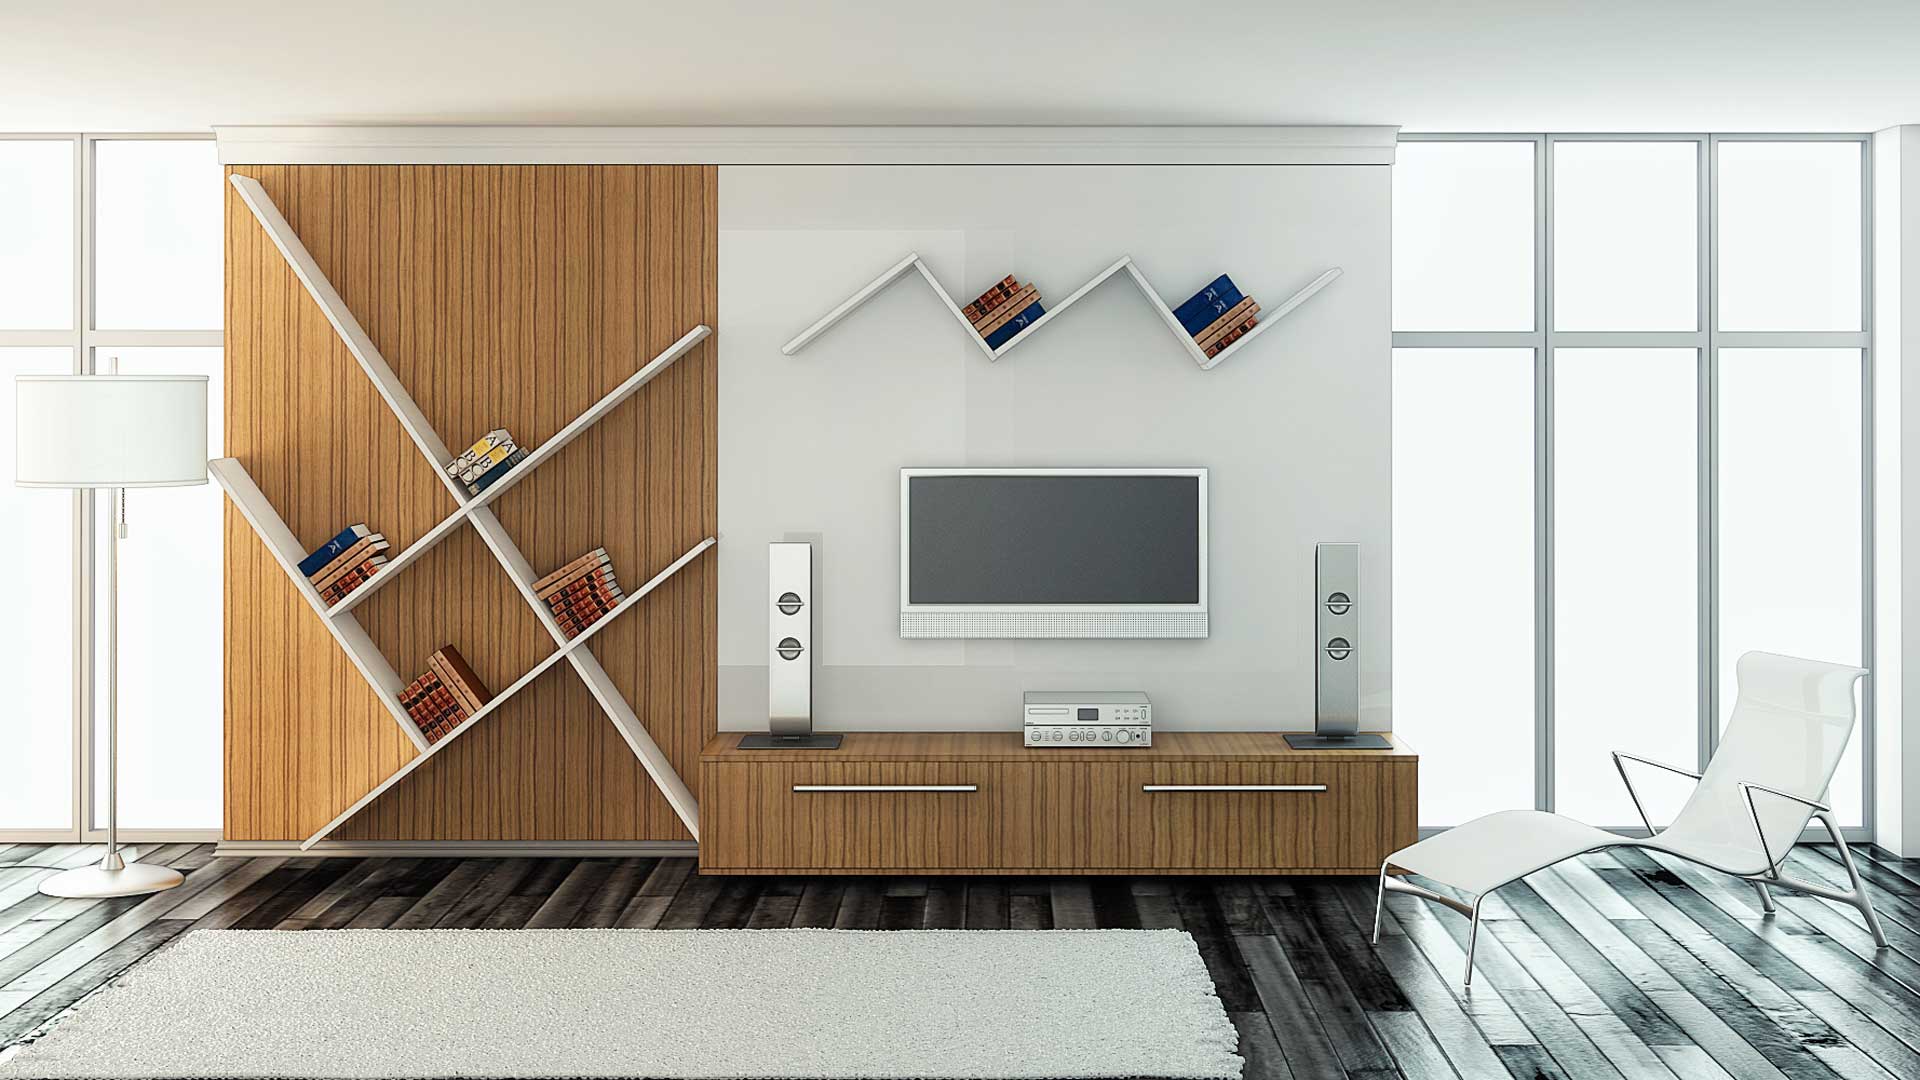 Sistem modular untuk reka bentuk ruang tamu yang bergaya dan kontemporari